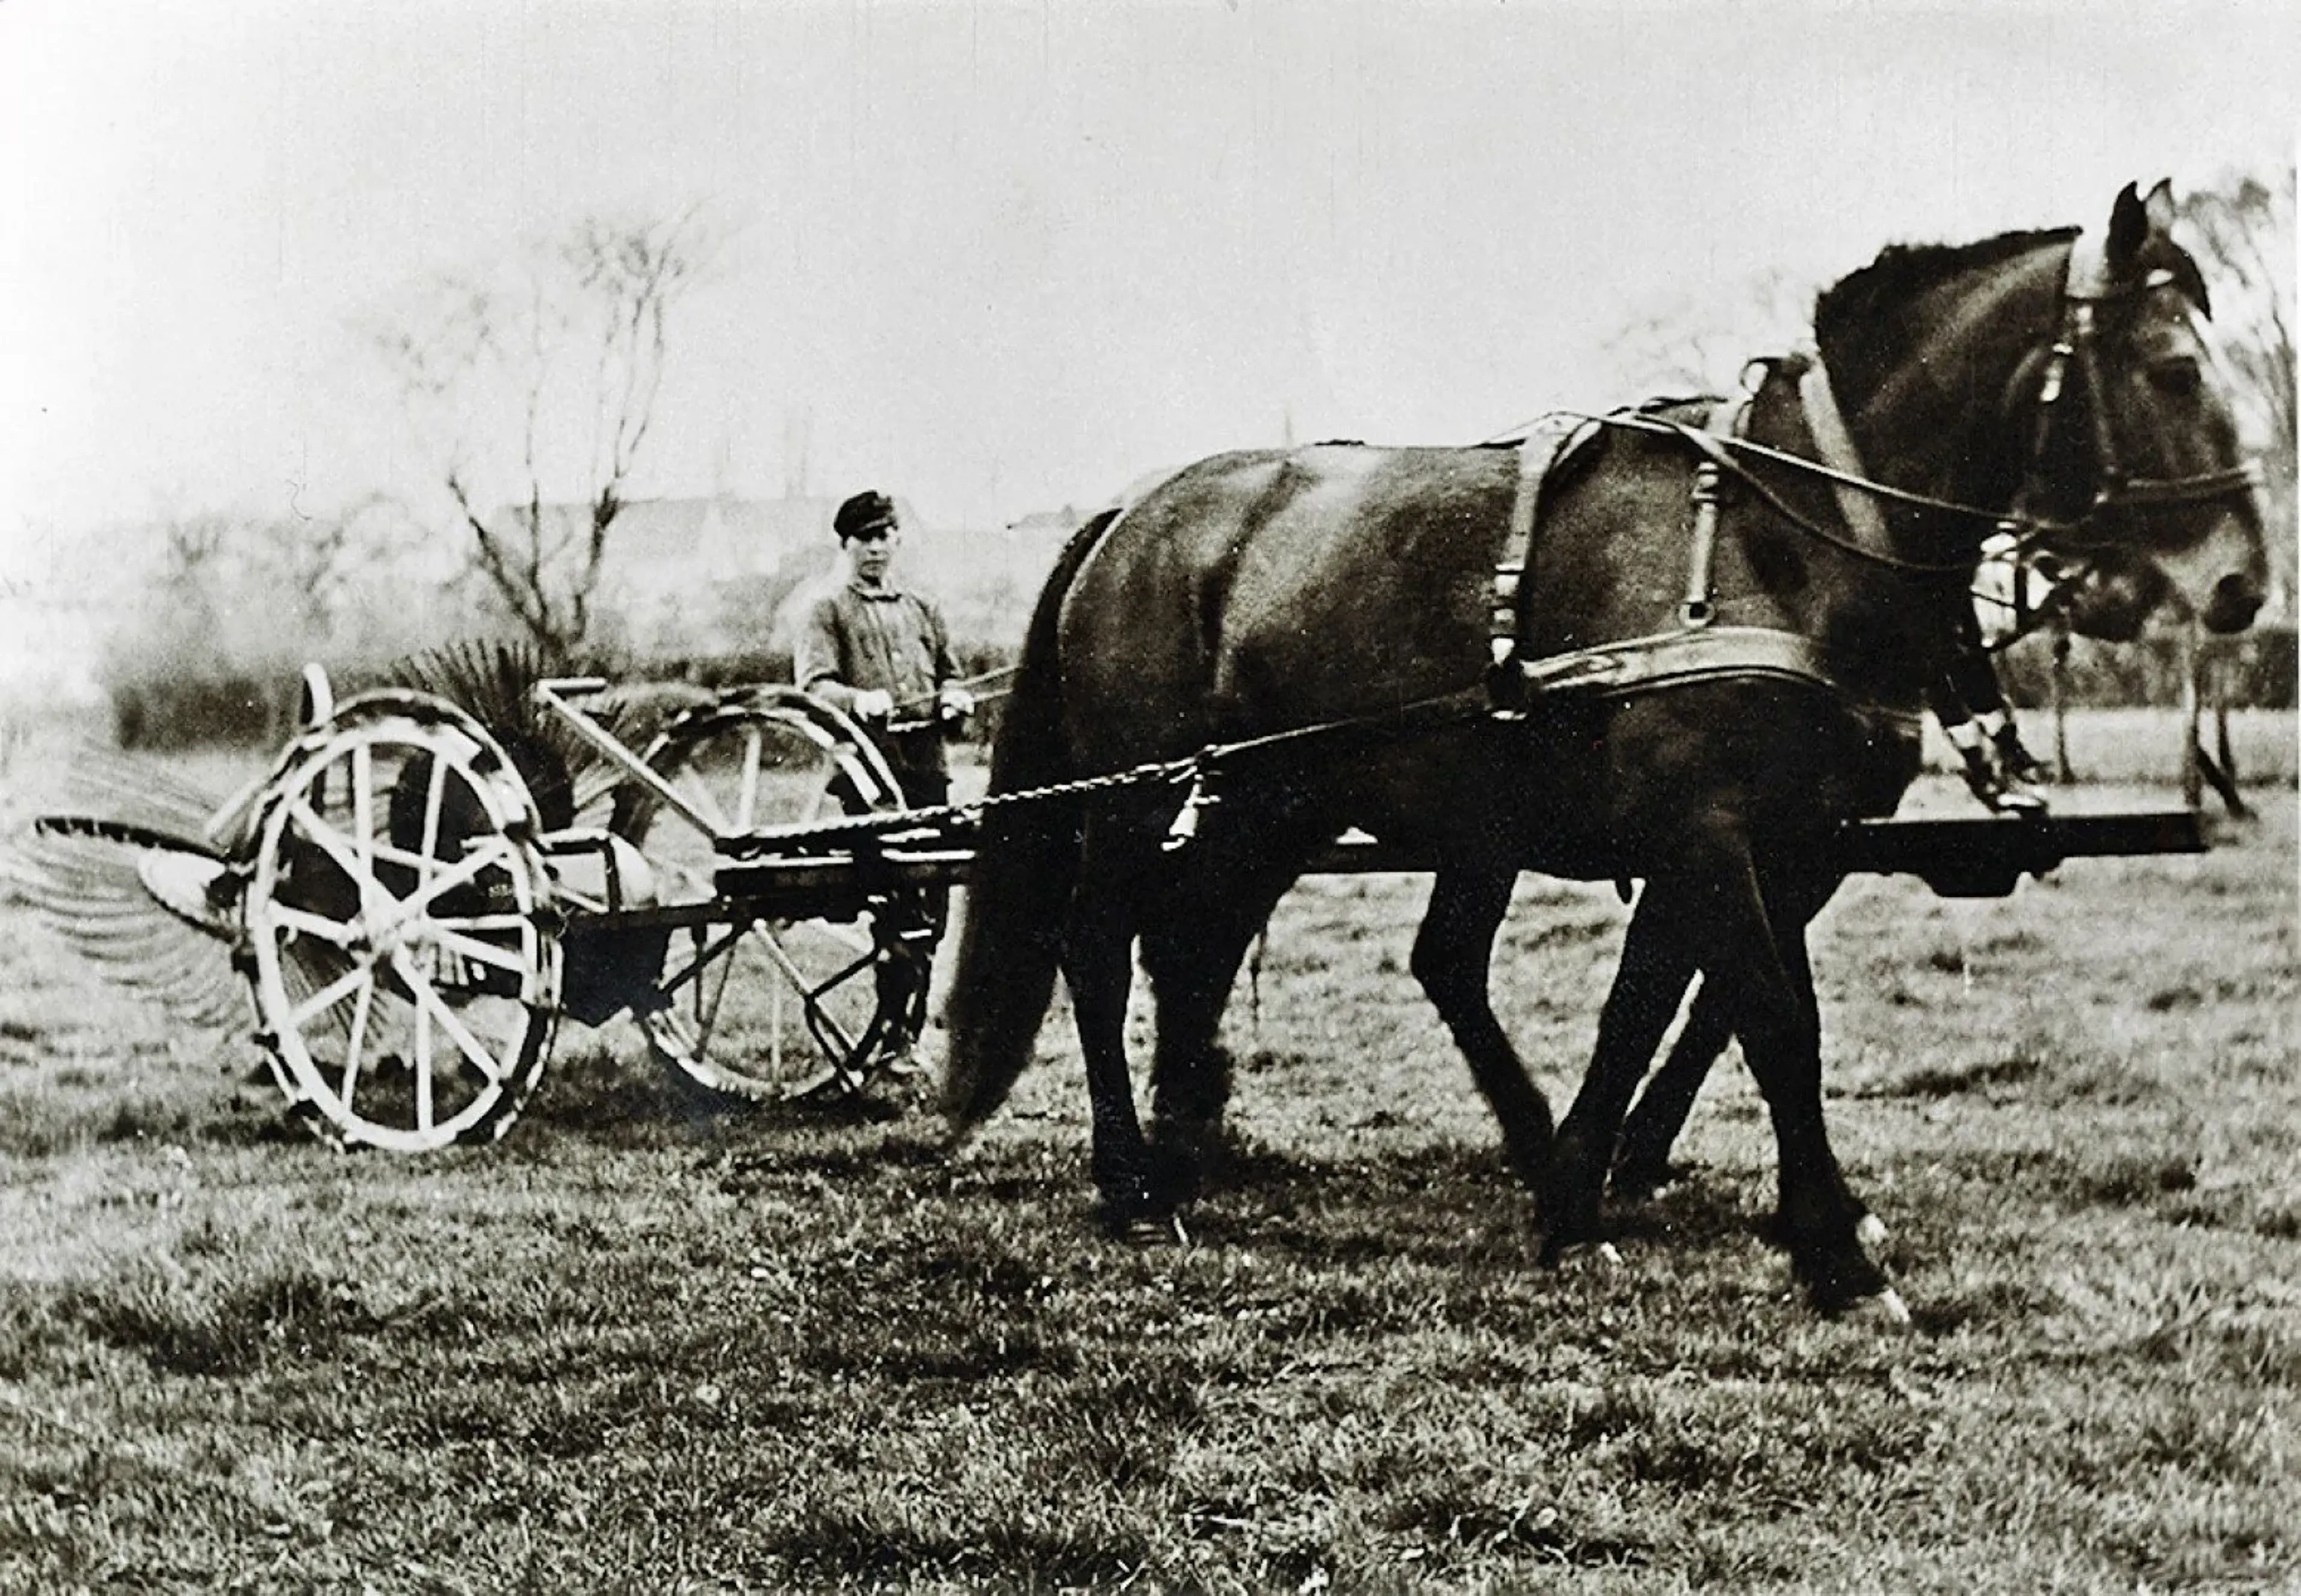 Fotografia histórica de um agricultor com uma colhedora de batatas puxada a cavalo.